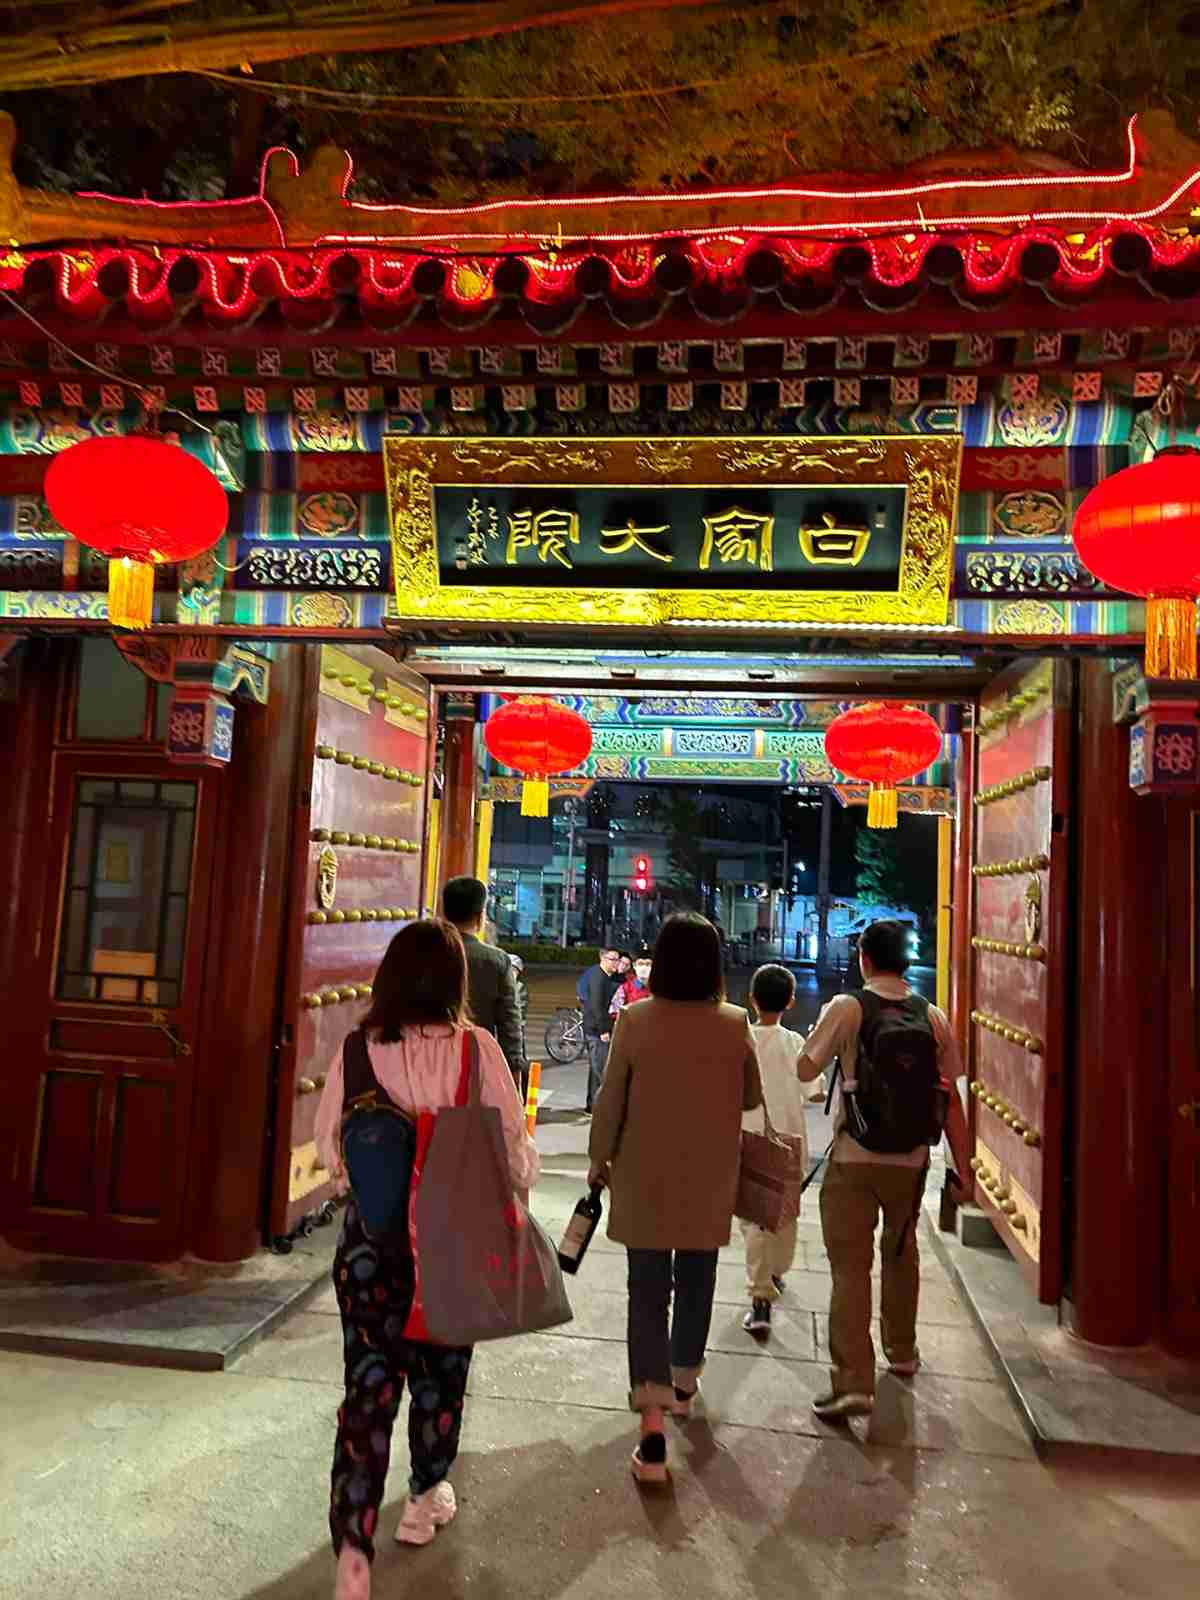 The gate of the Bai Jia Da Yuan